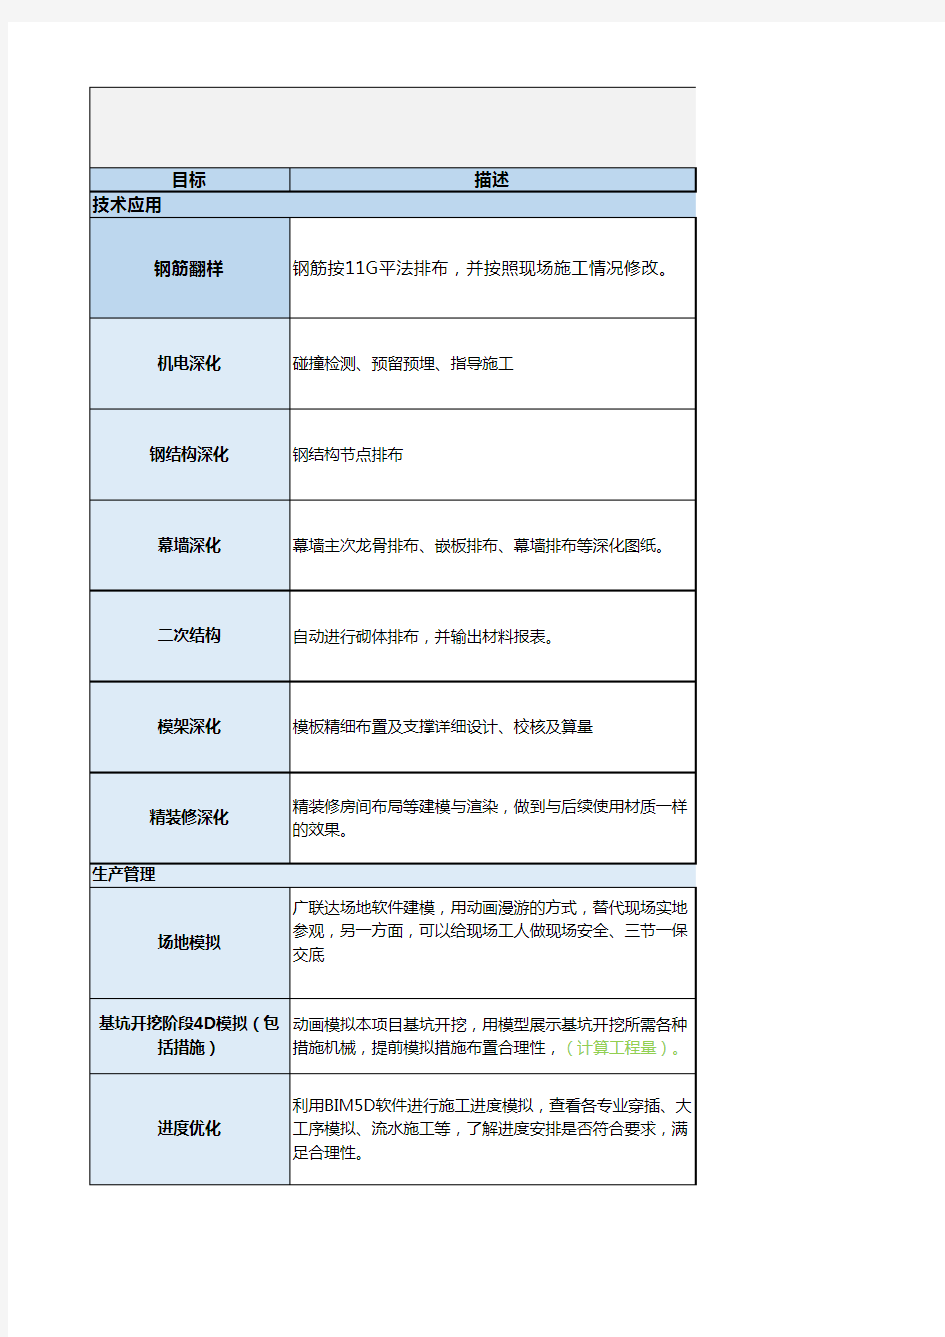 广联达山东大学图书馆项目BIM实施作业文件